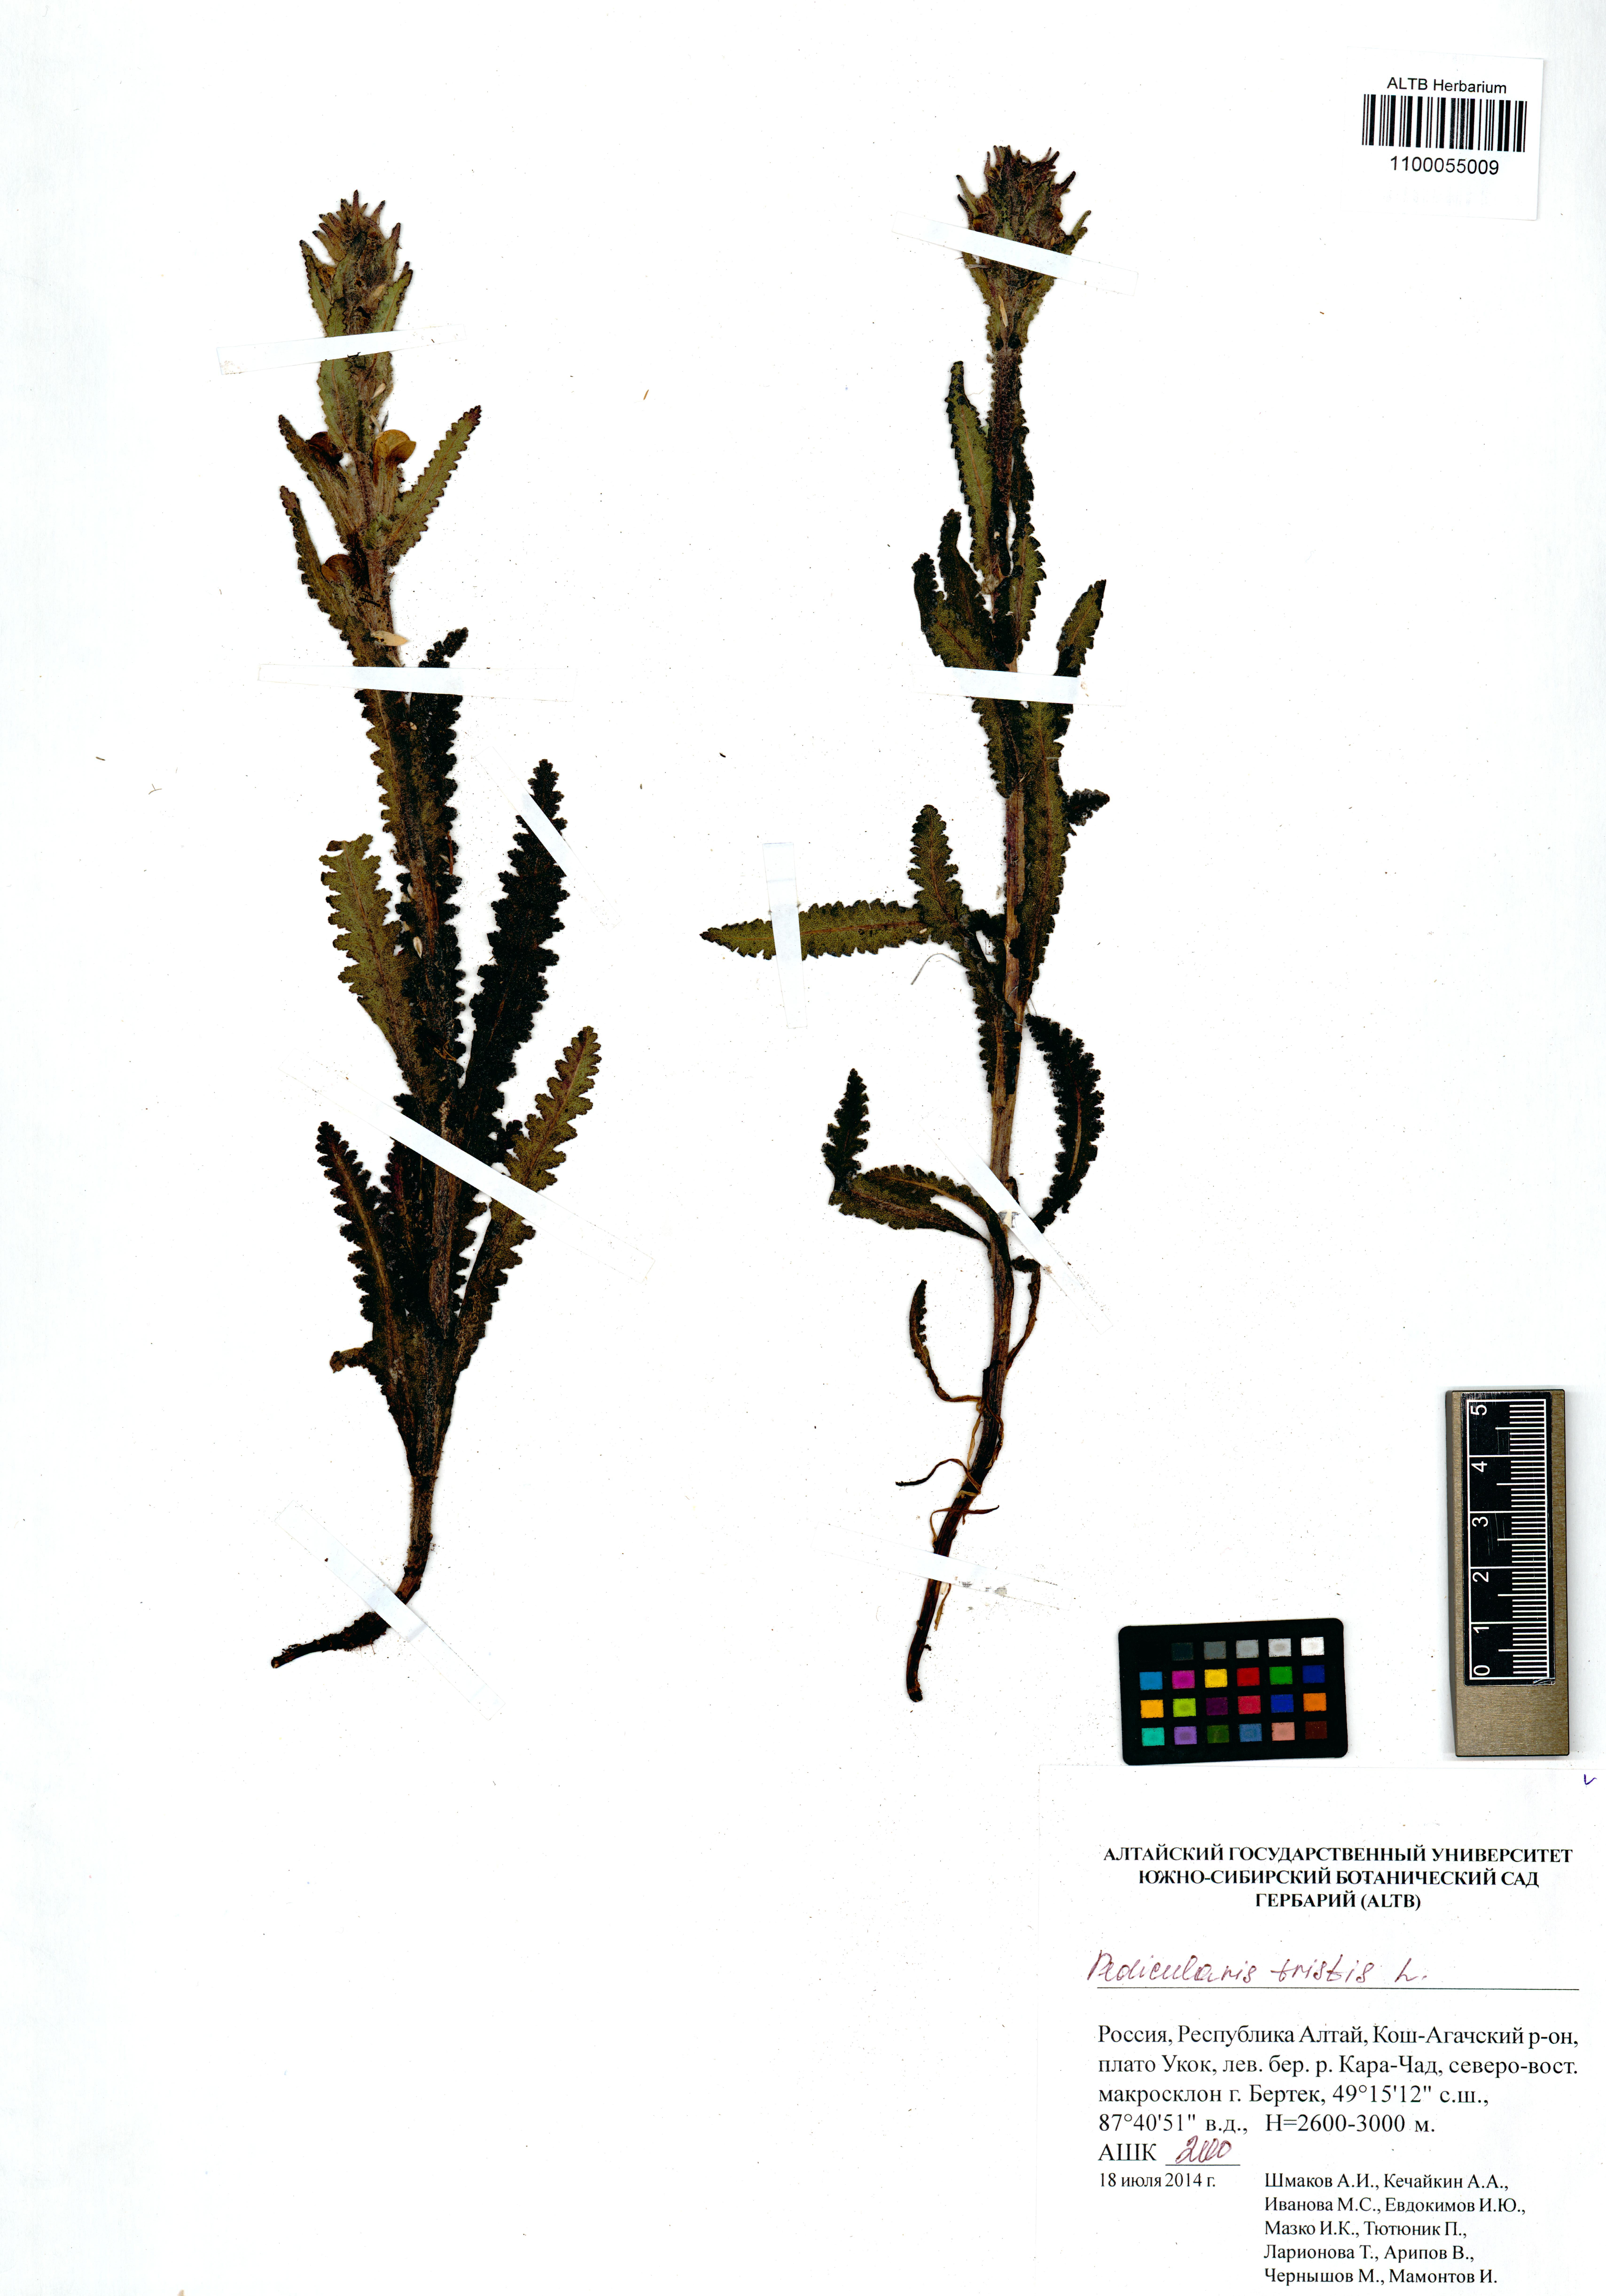 Pedicularis tristis L.